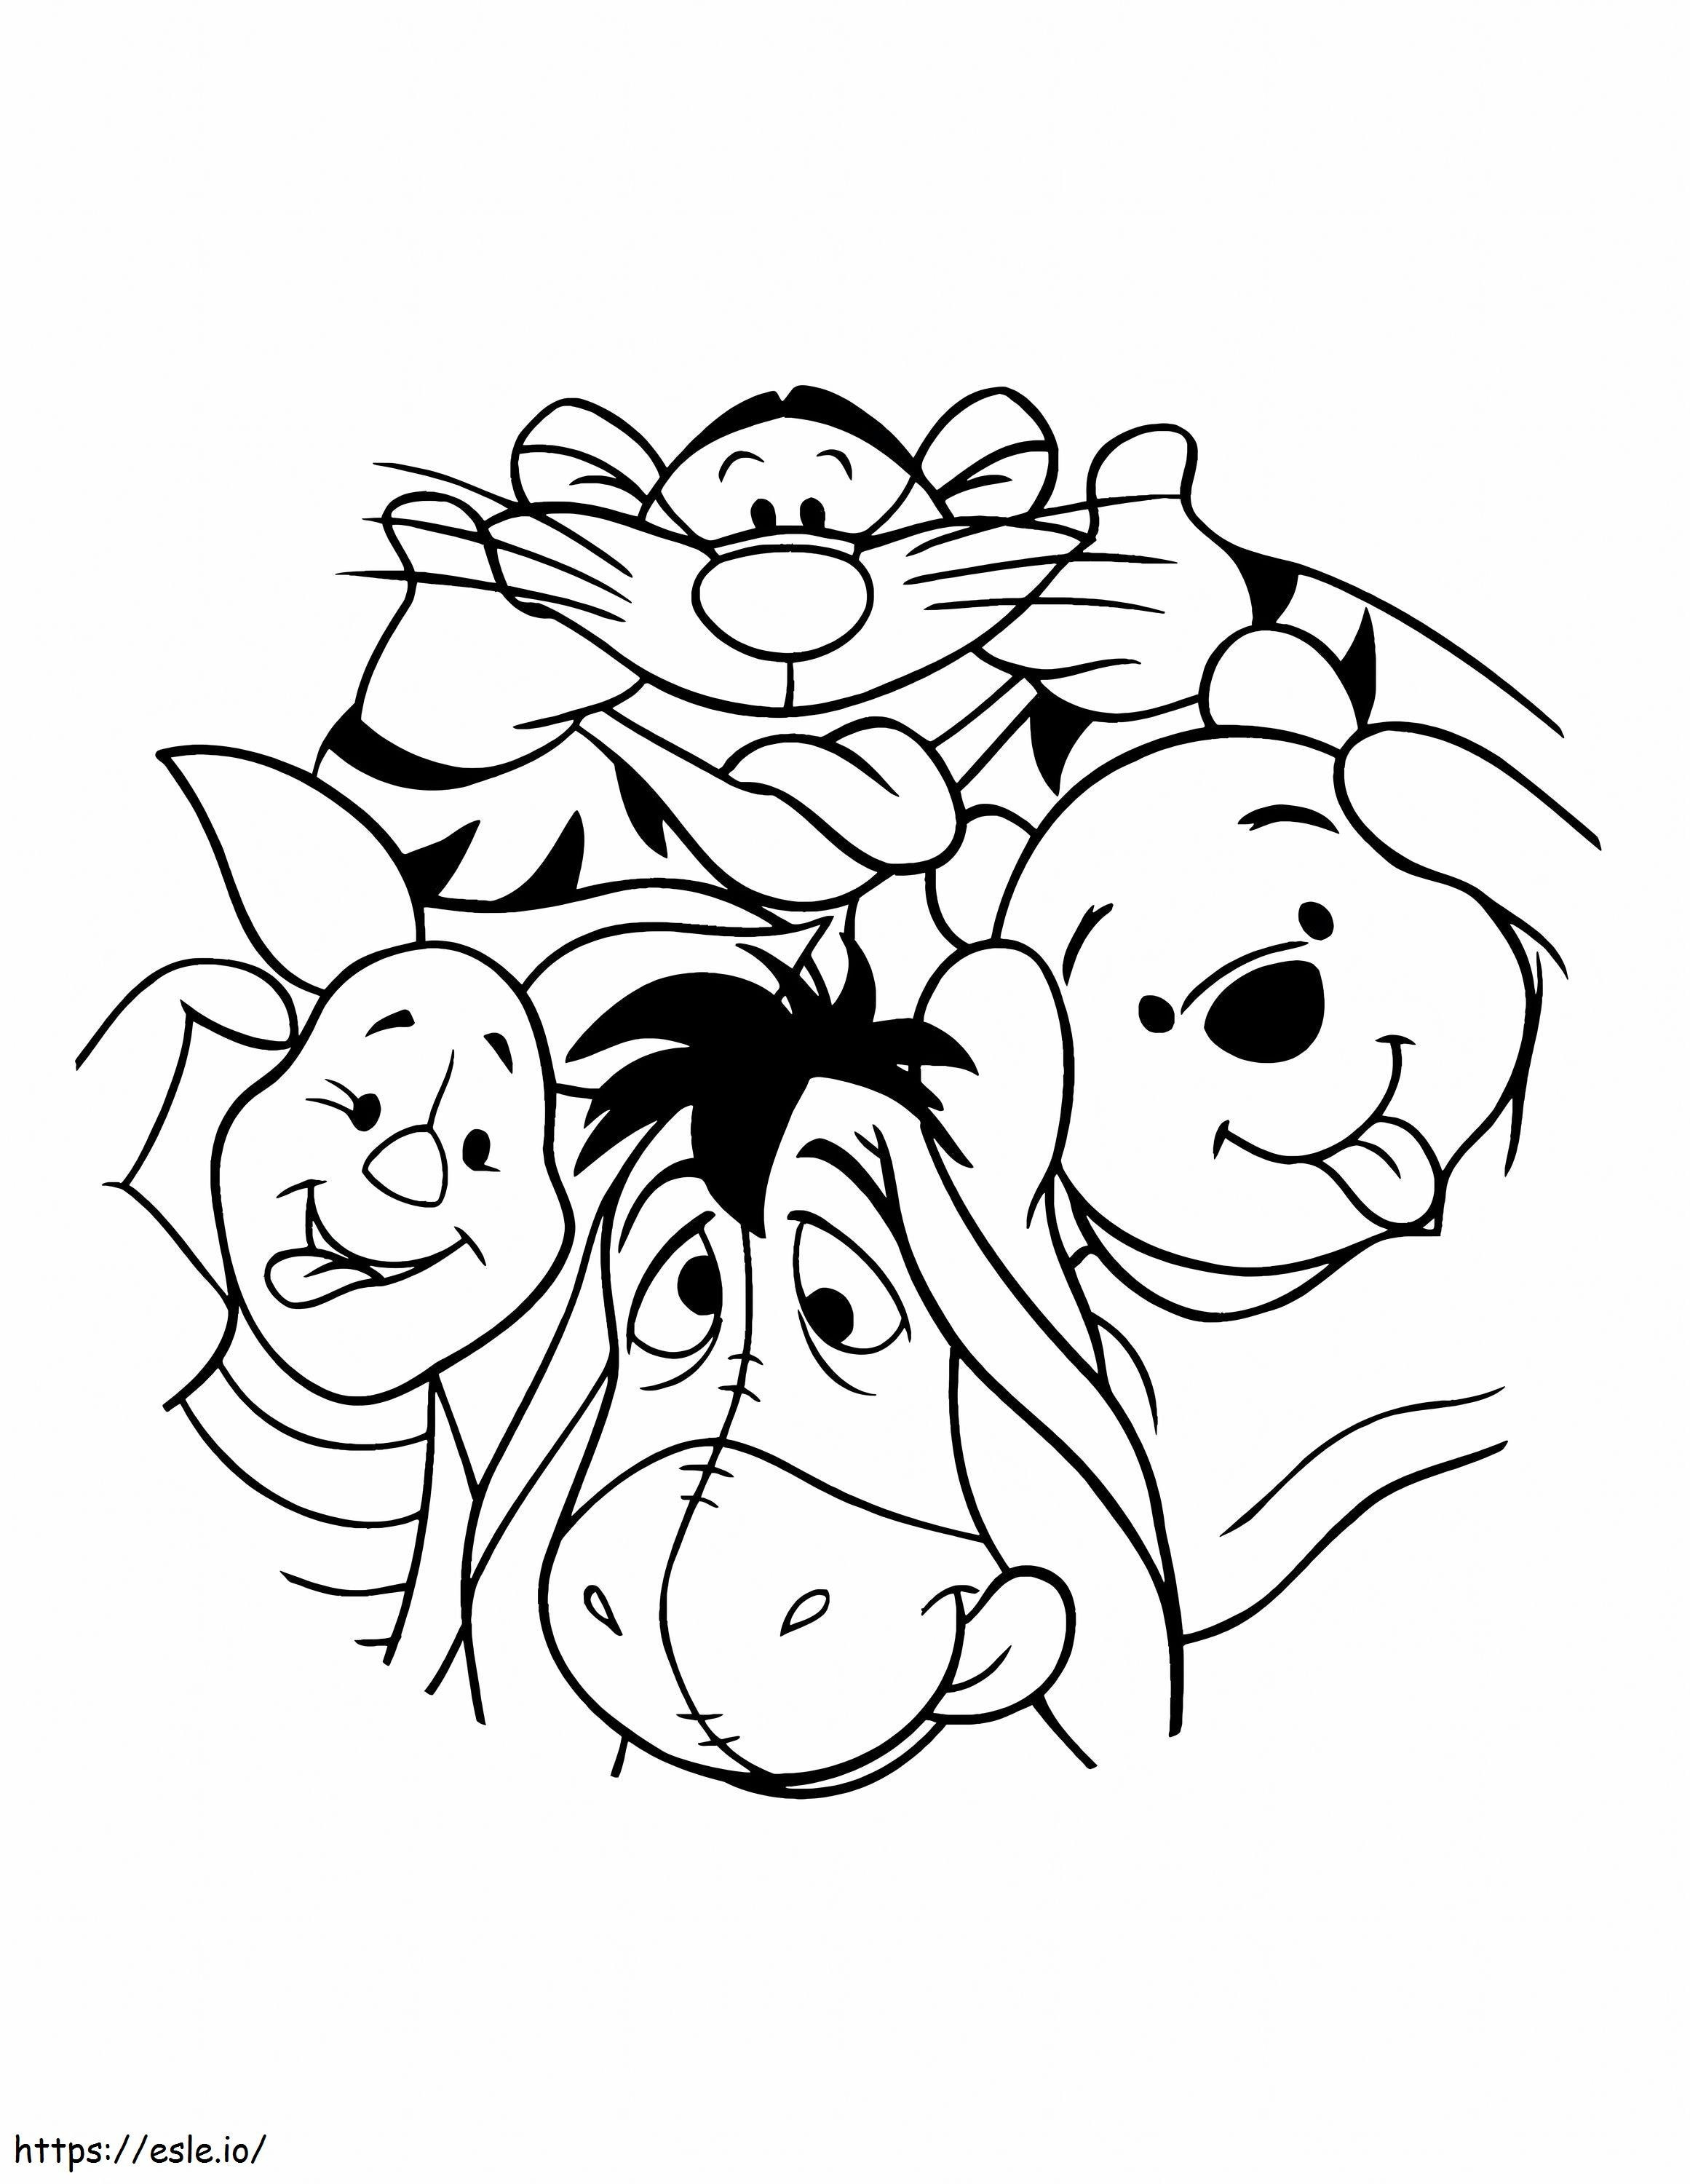 Urso Pooh da Disney e seus amigos para colorir